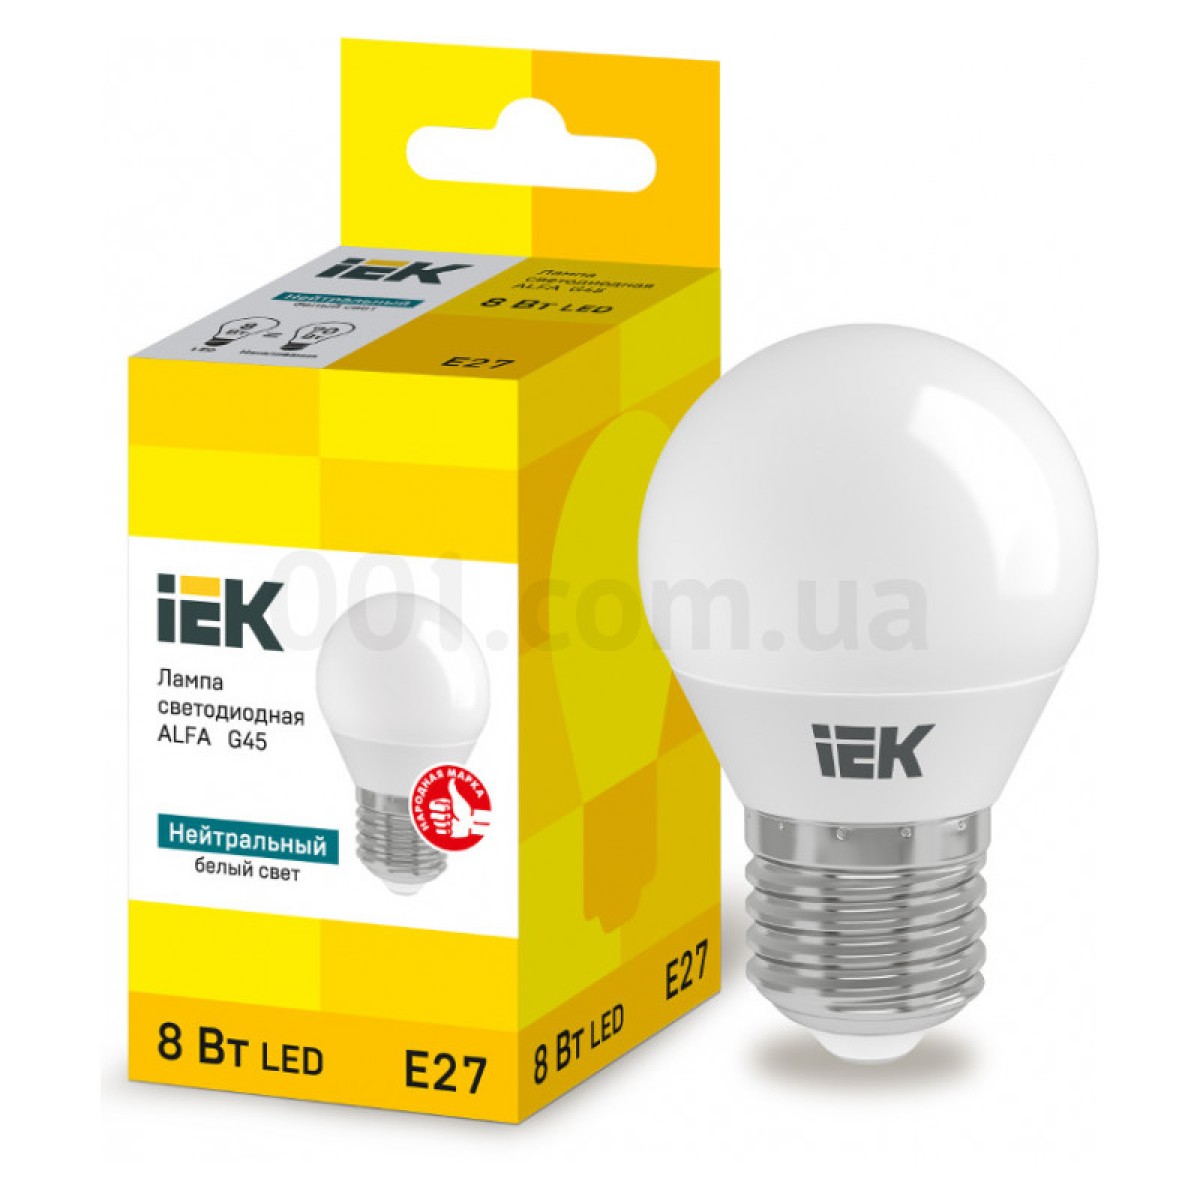 Світлодіодна лампа LED ALFA G45 (куля) 8 Вт 230В 4000К E27, IEK 256_256.jpg